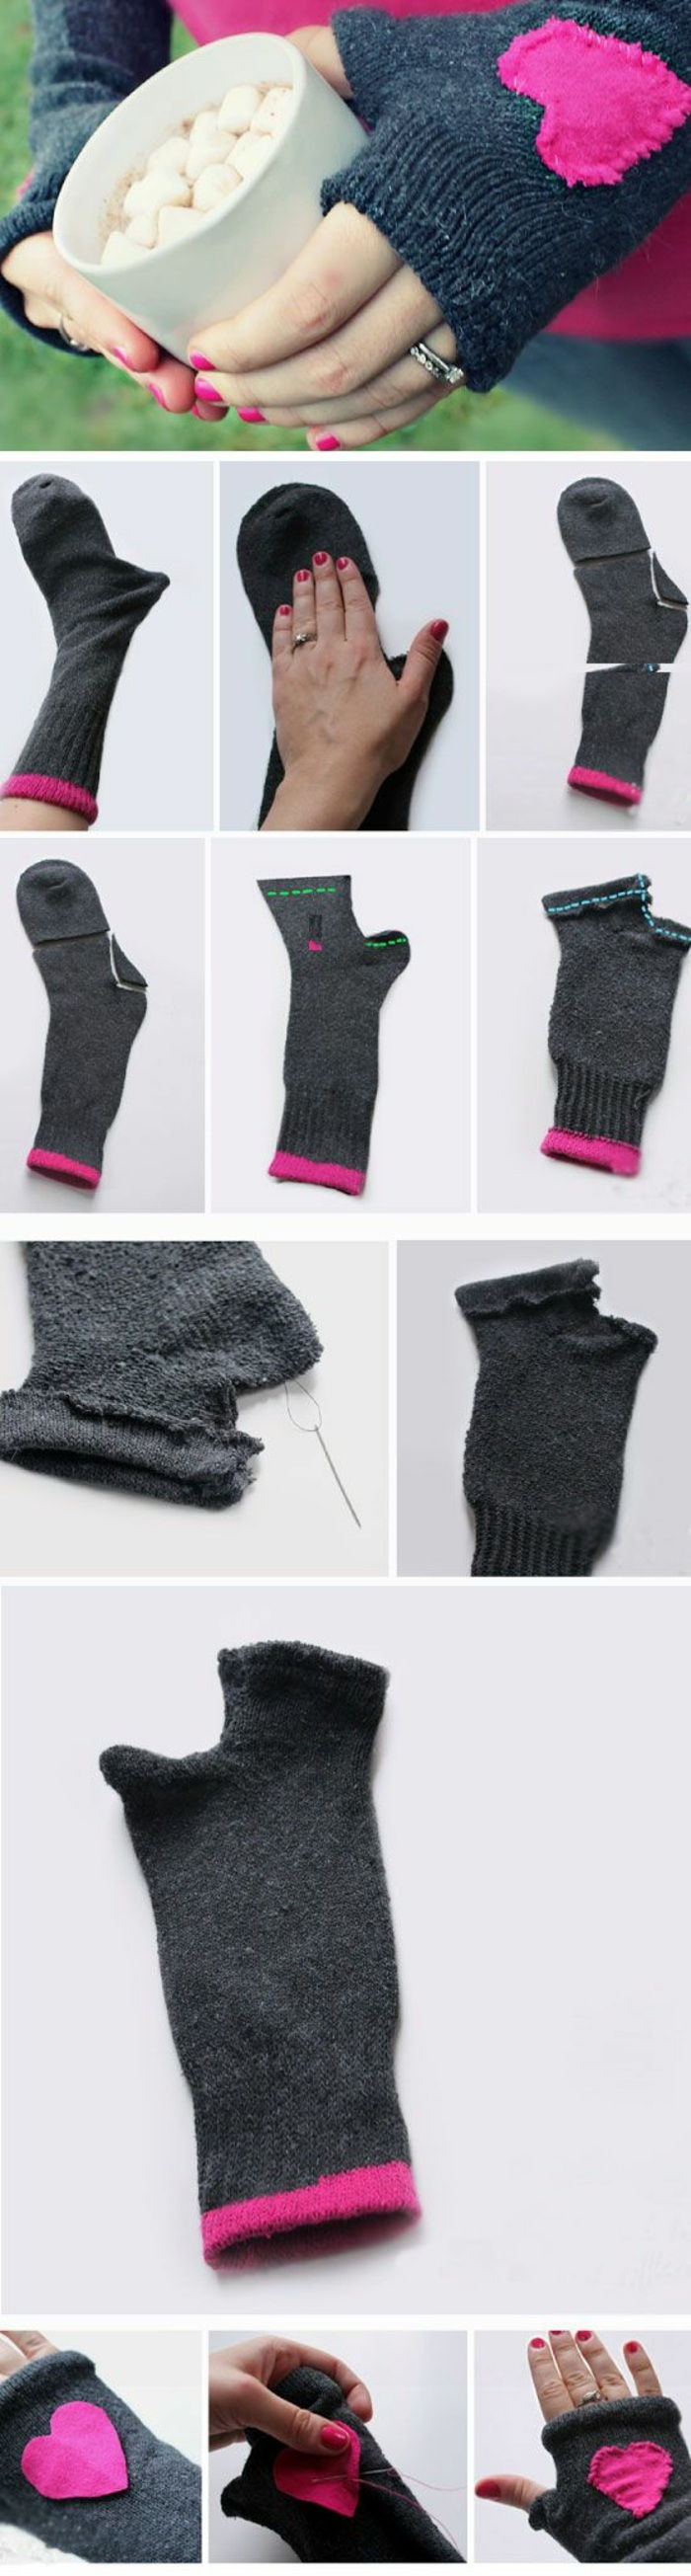 maak zelf handschoenen uit grijze sokken, roze hart